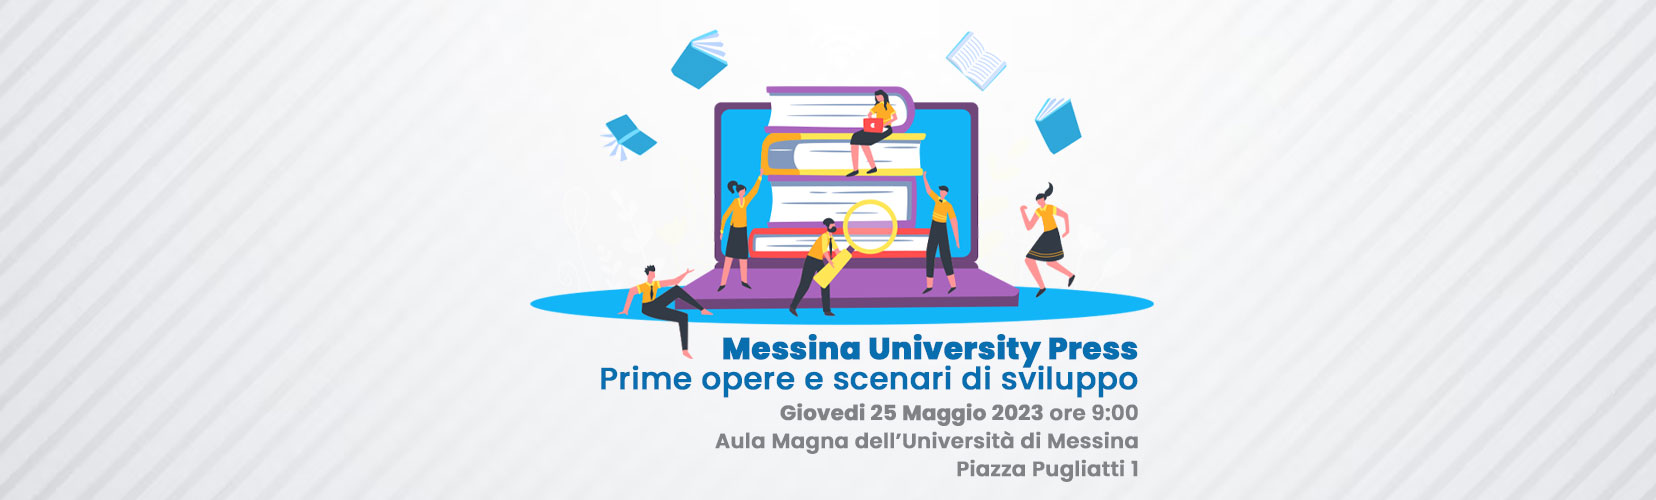 Messina University Press – Prime opere e scenari di sviluppo